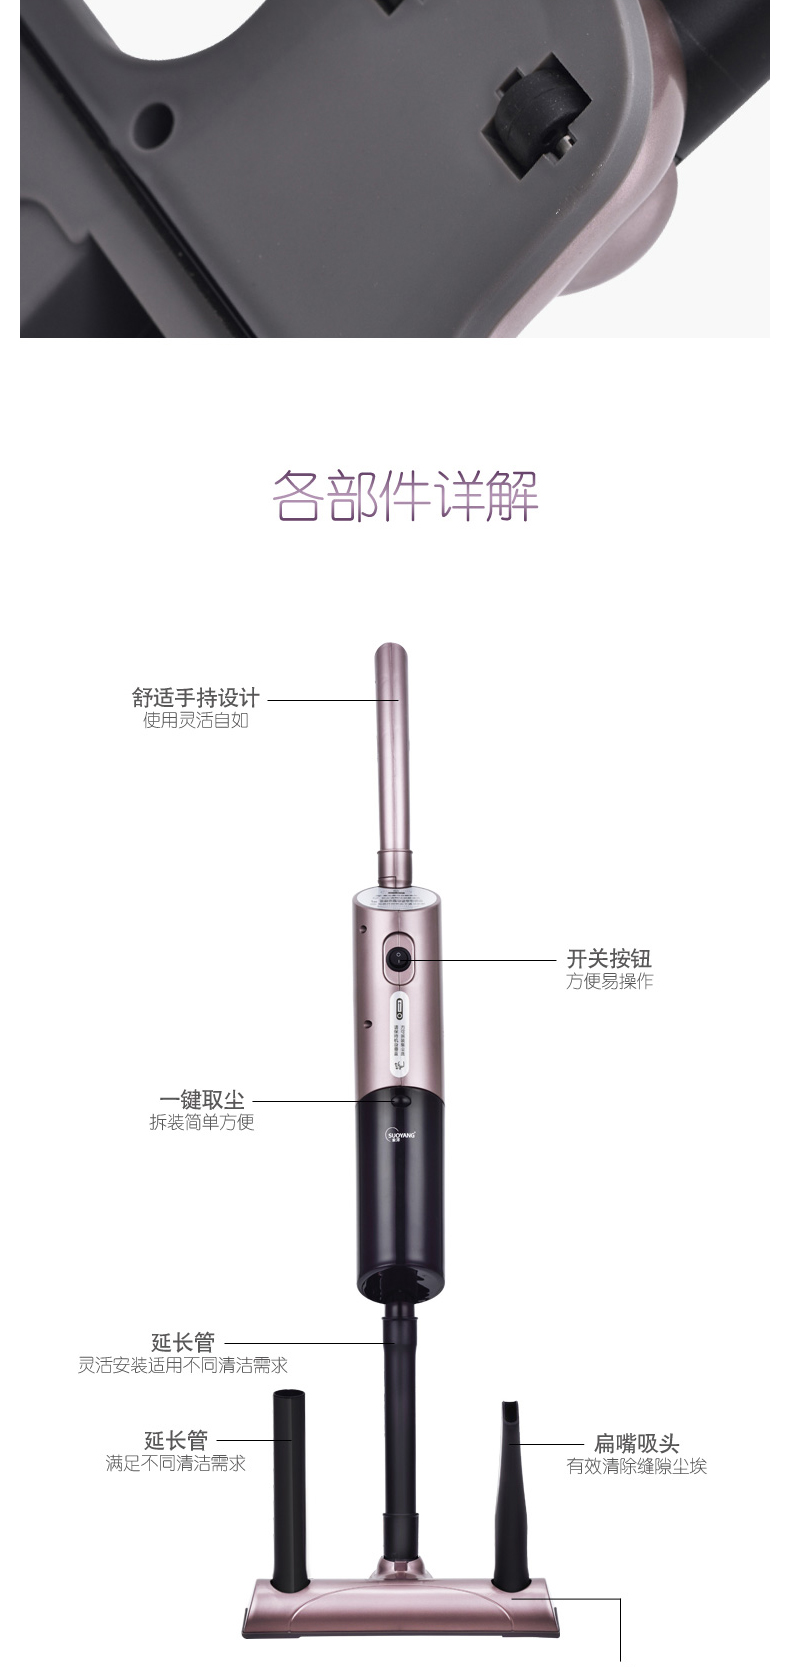 索洋 旋风吸尘器 SY-XC001 包装尺寸：525*145*165mm 